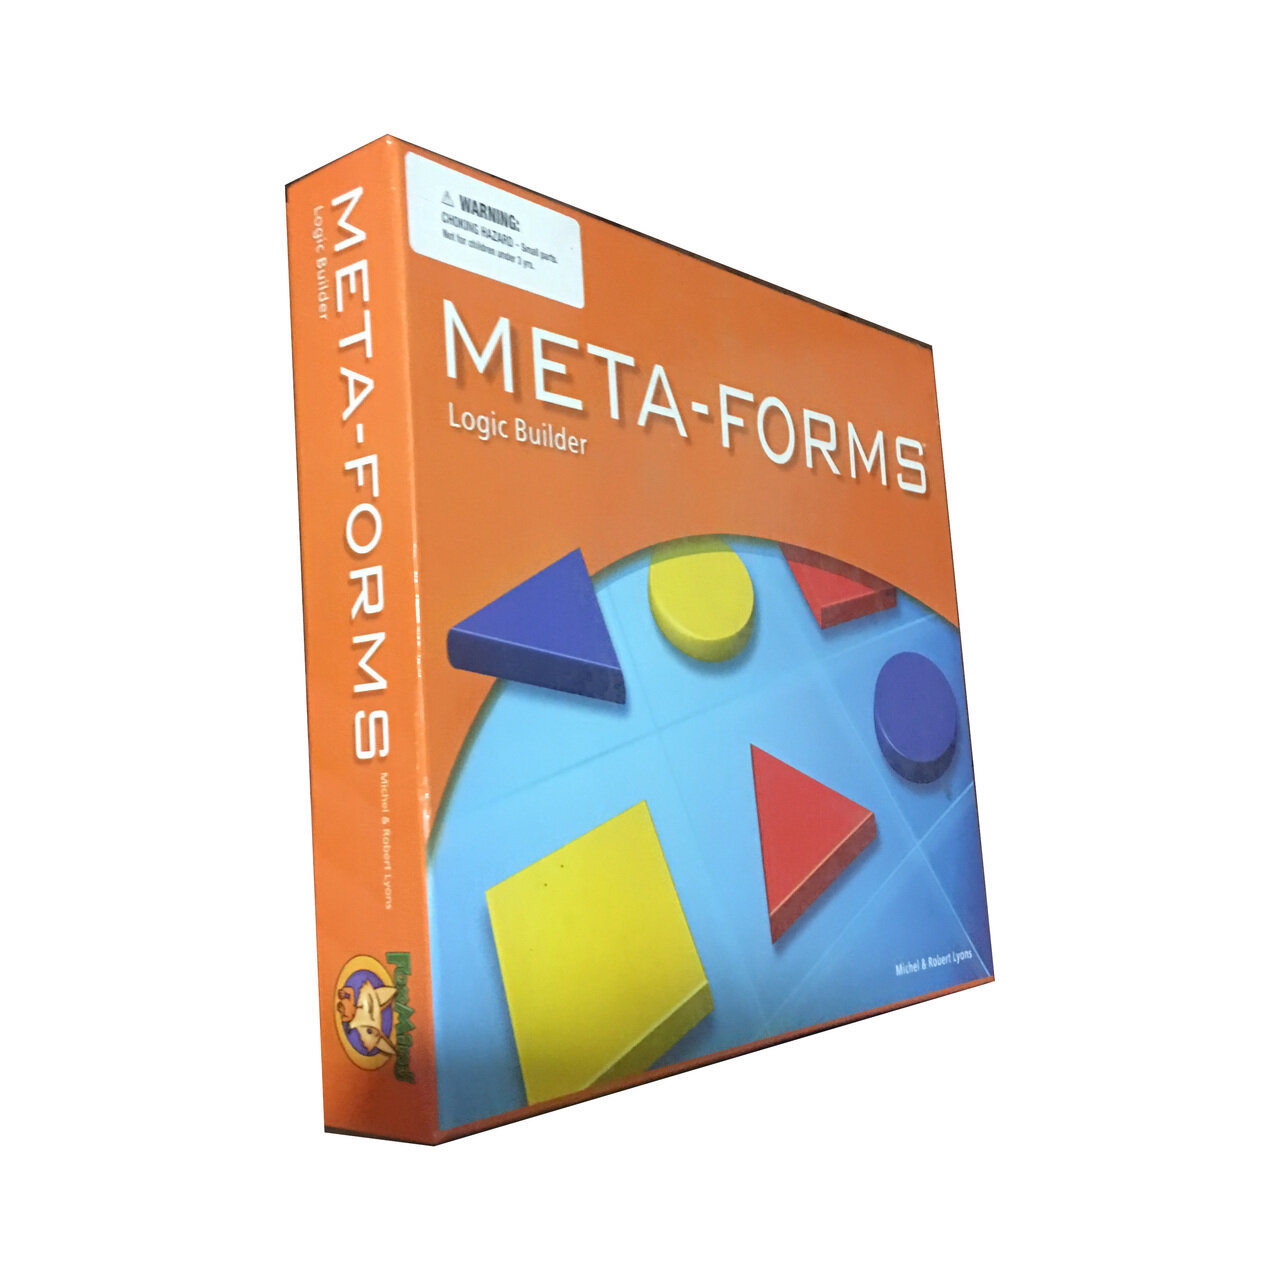 Meta-Forms Logic Builder Game